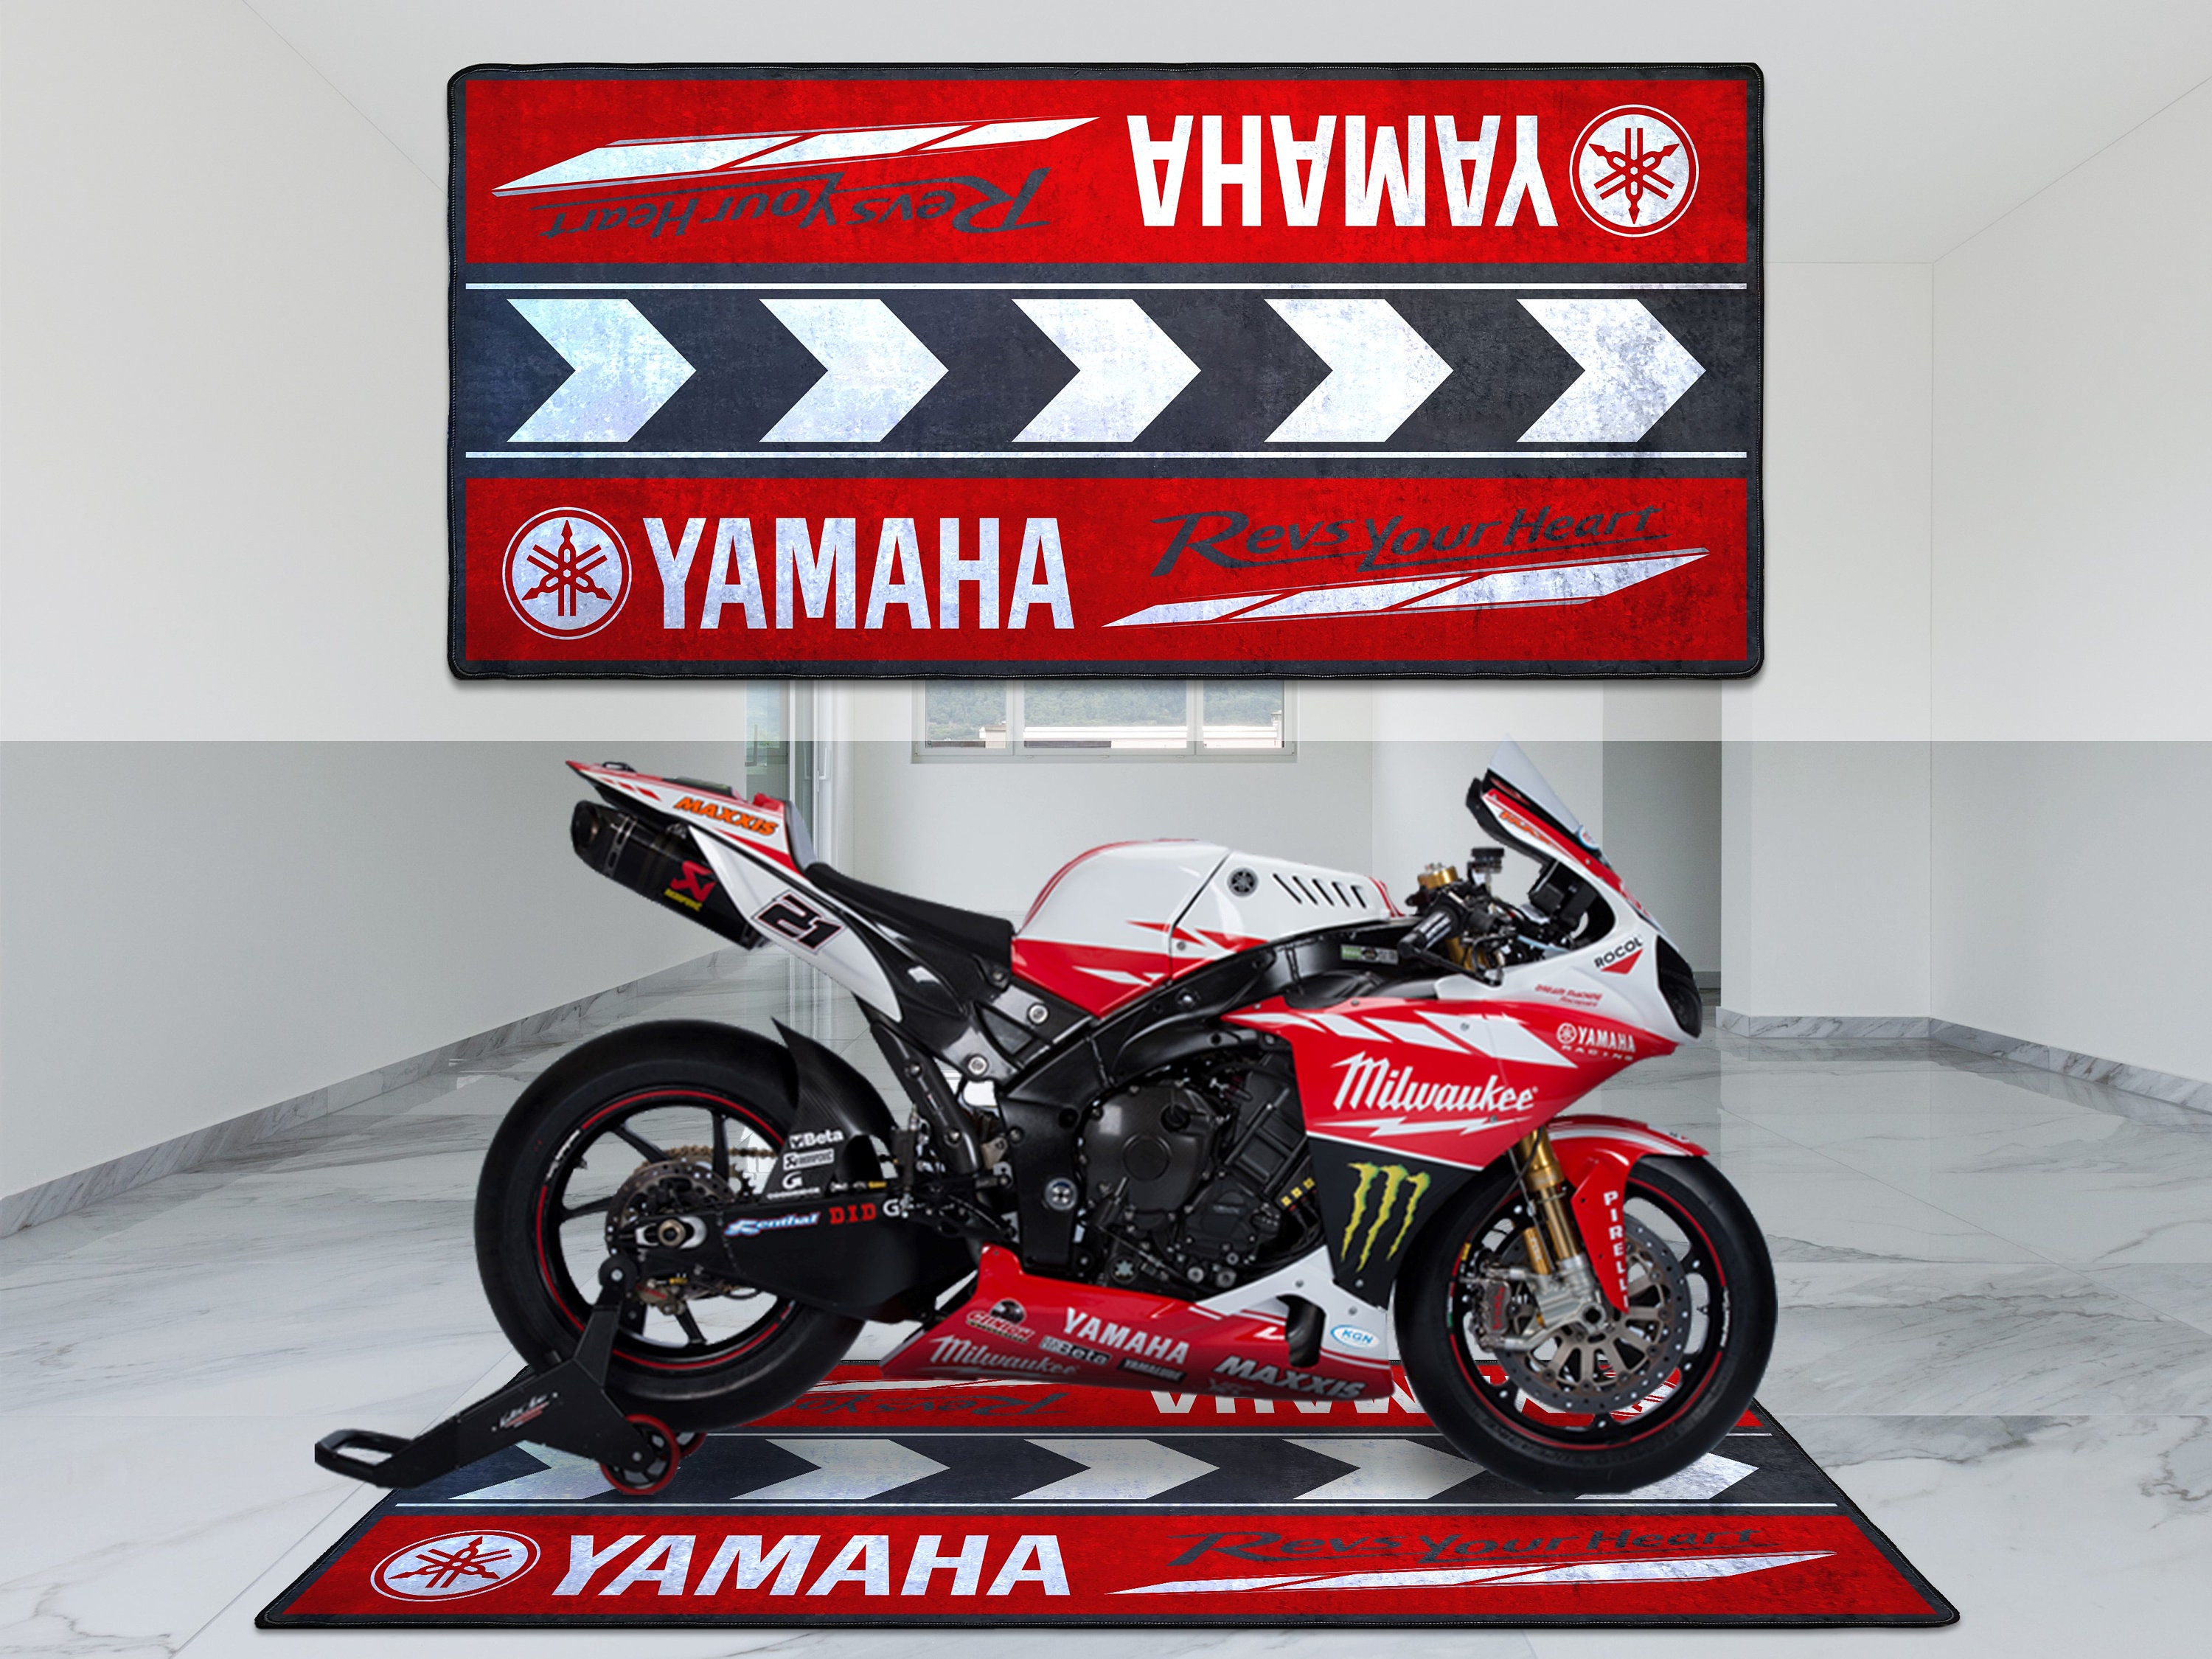 Teppich Umwelt- Biketek Garage Matt Serien 5 für Yamaha Motorrad